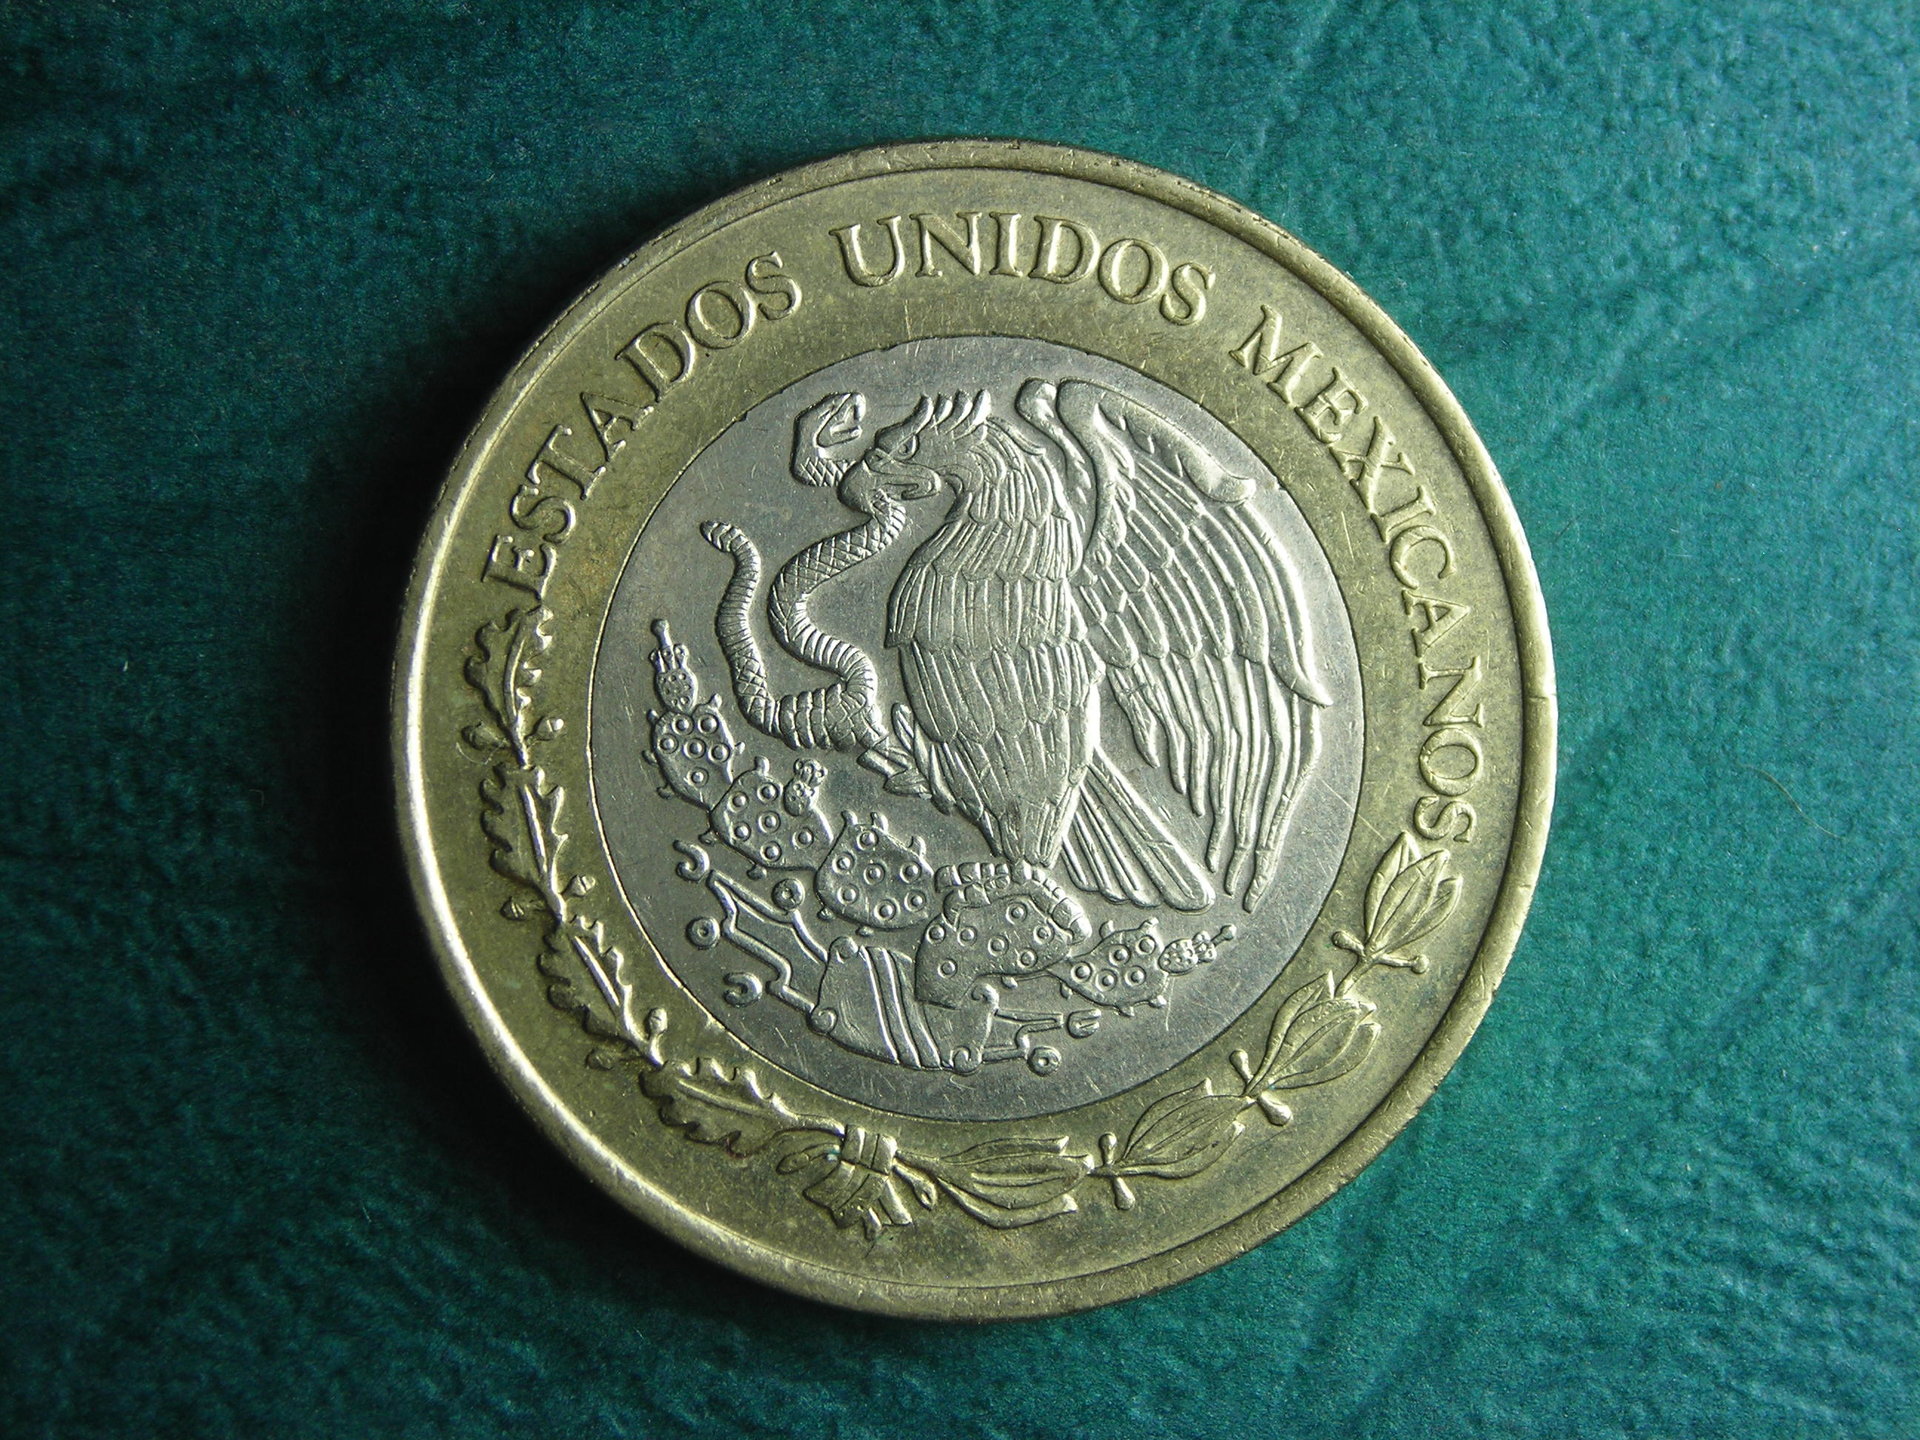 2015 Mexico 10 peso obv.JPG